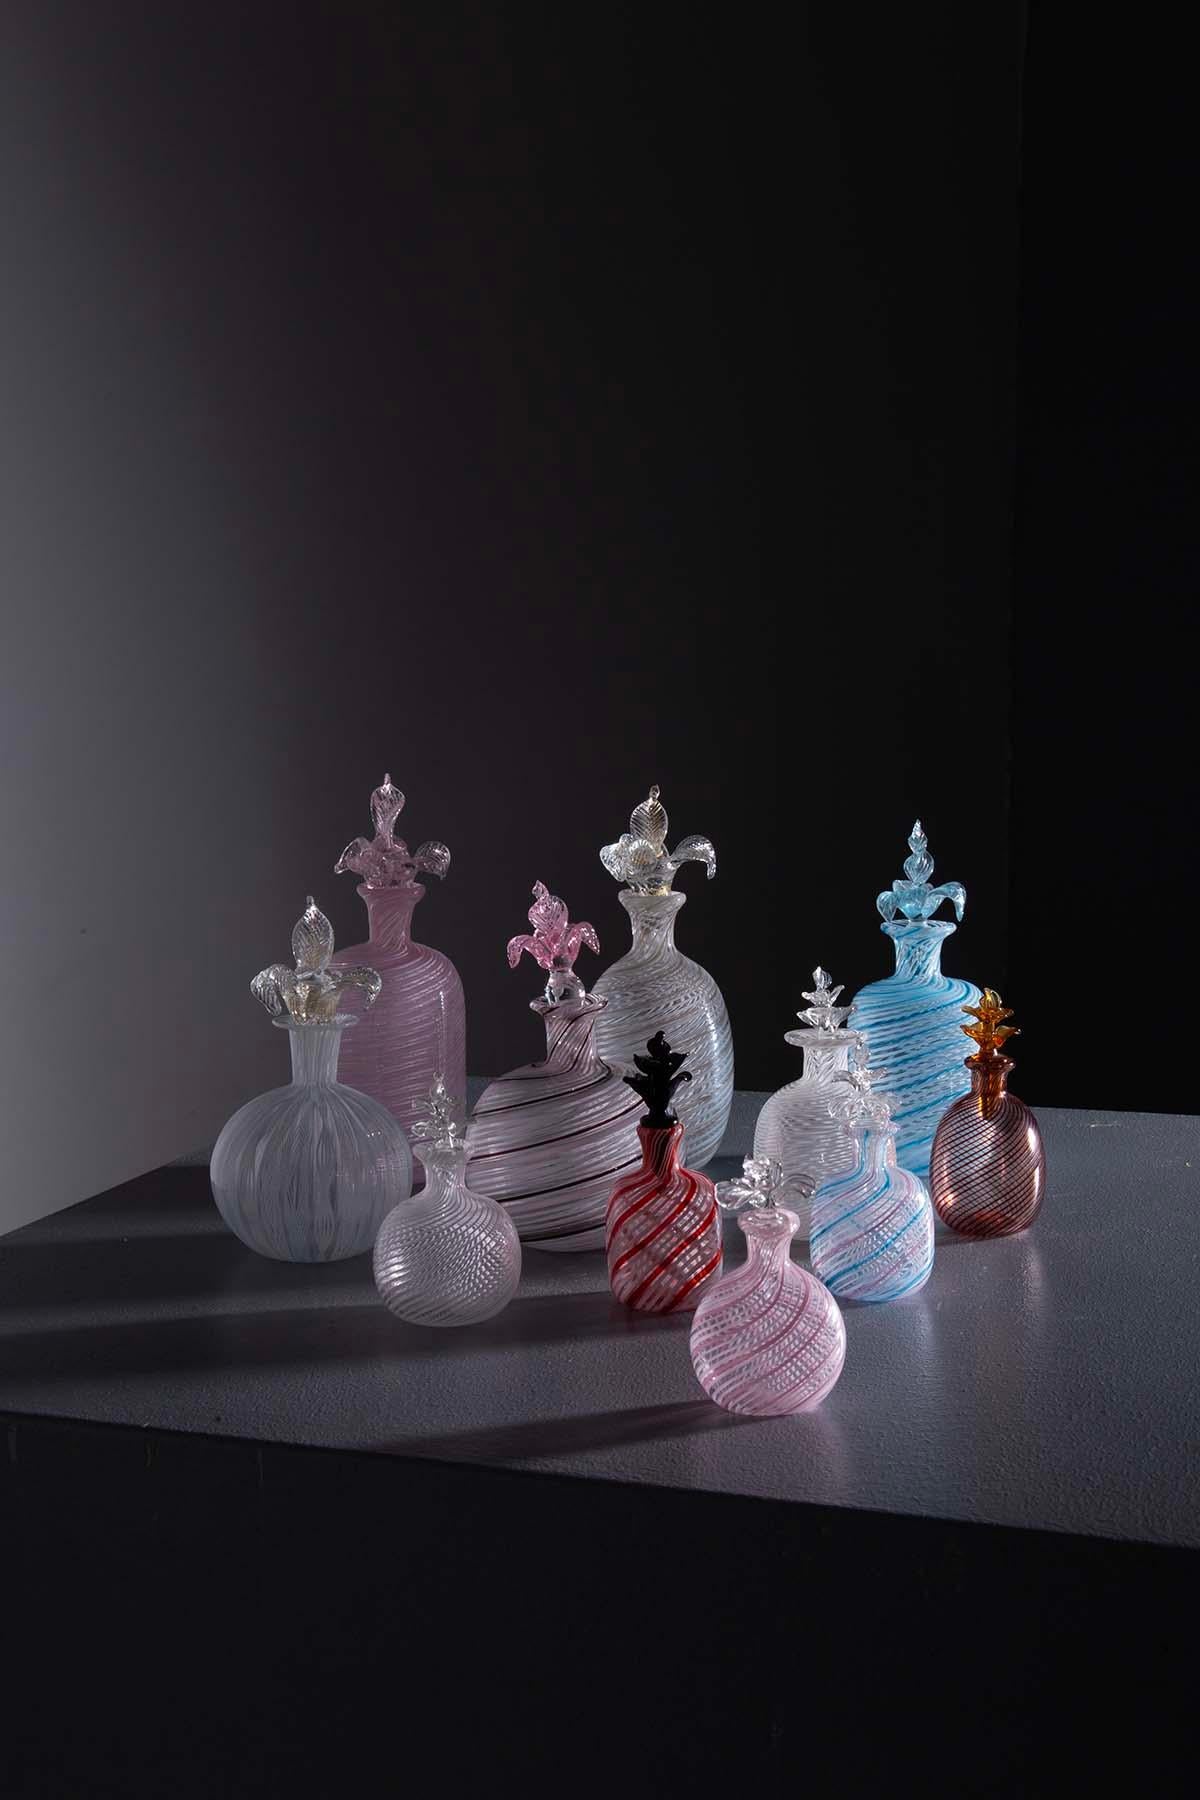 Un ensemble de 10 ampoules décoratives exquises en verre précieux de Murano datant des années 1960 est un véritable joyau artistique.

Ce verre a été façonné avec talent et créativité par des maîtres verriers italiens, en utilisant une technique